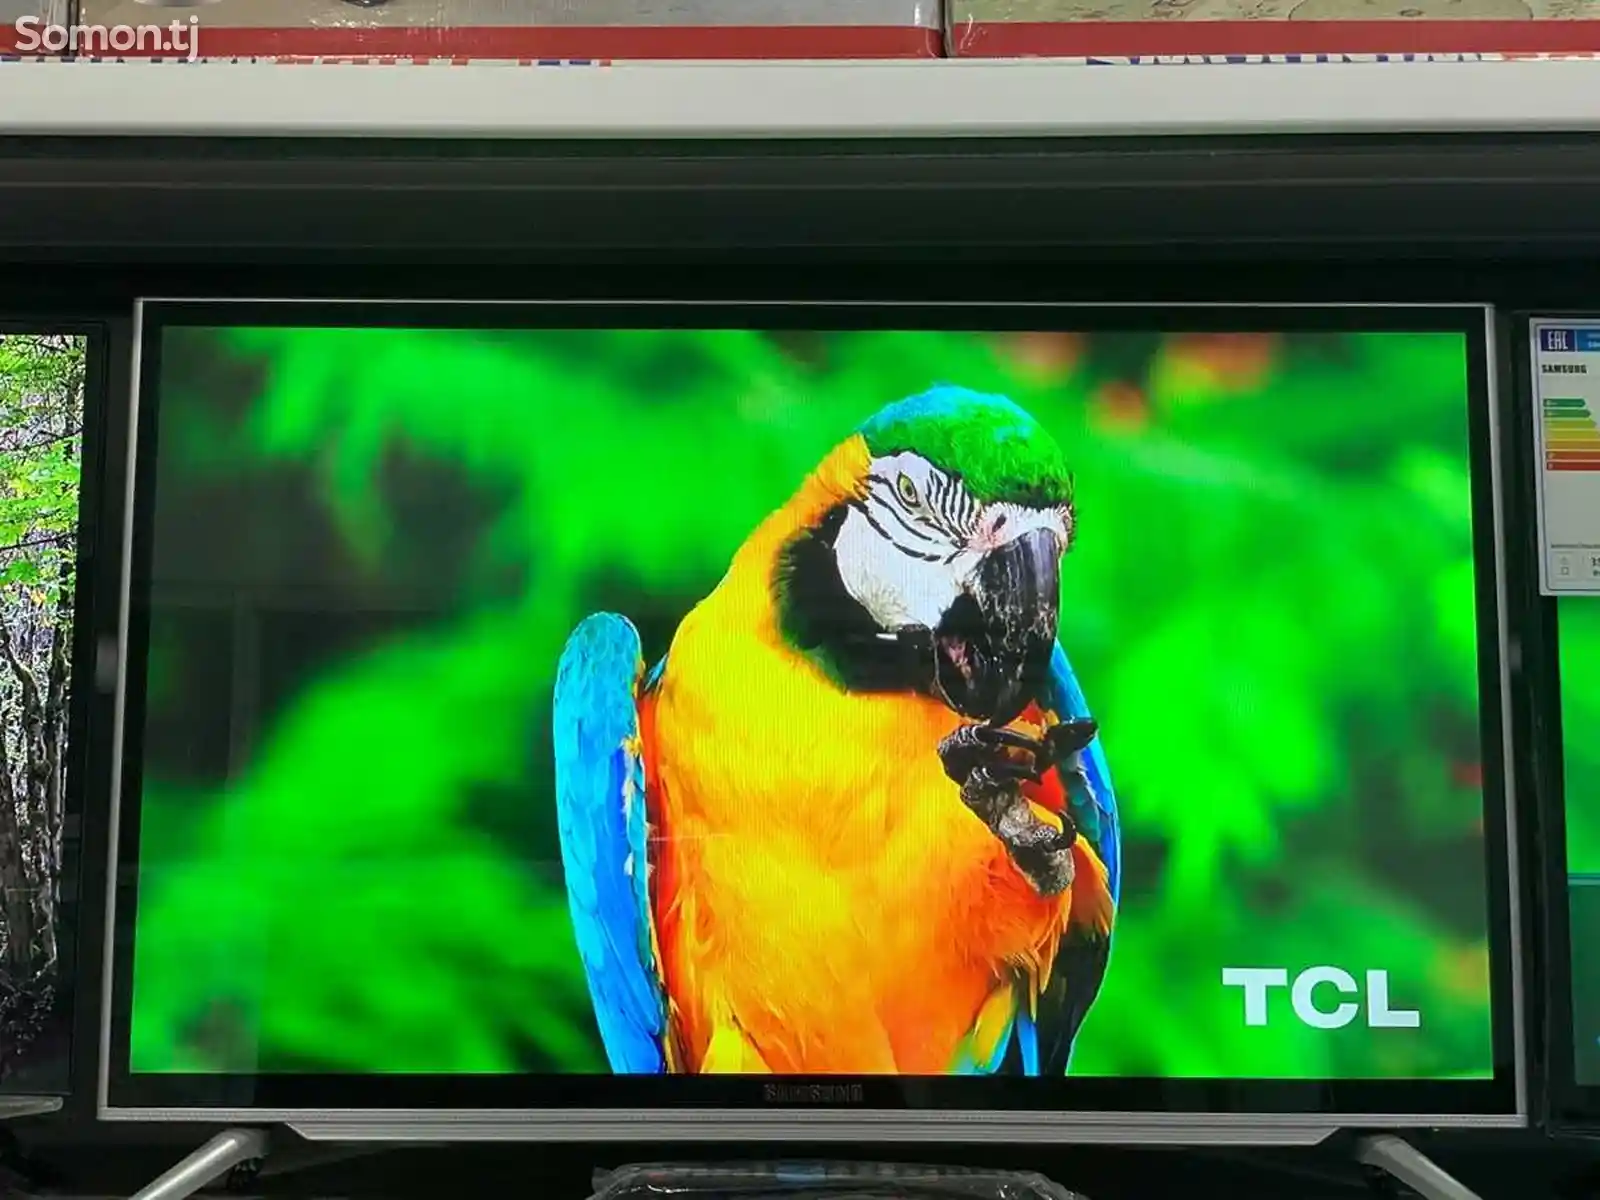 Телевизор 32 Samsung